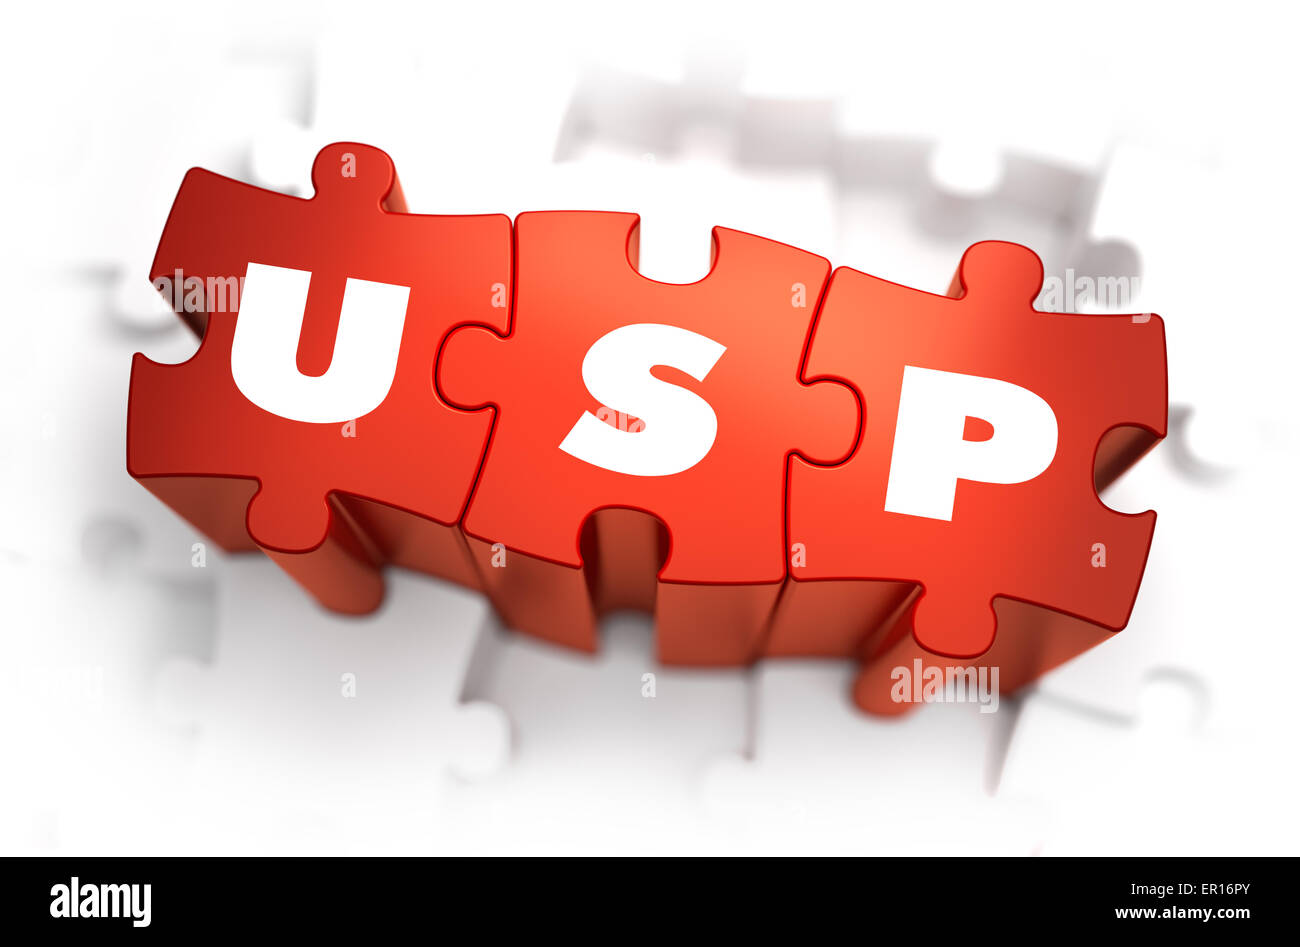 USP - weiß Wort auf rote Rätsel. Stockfoto